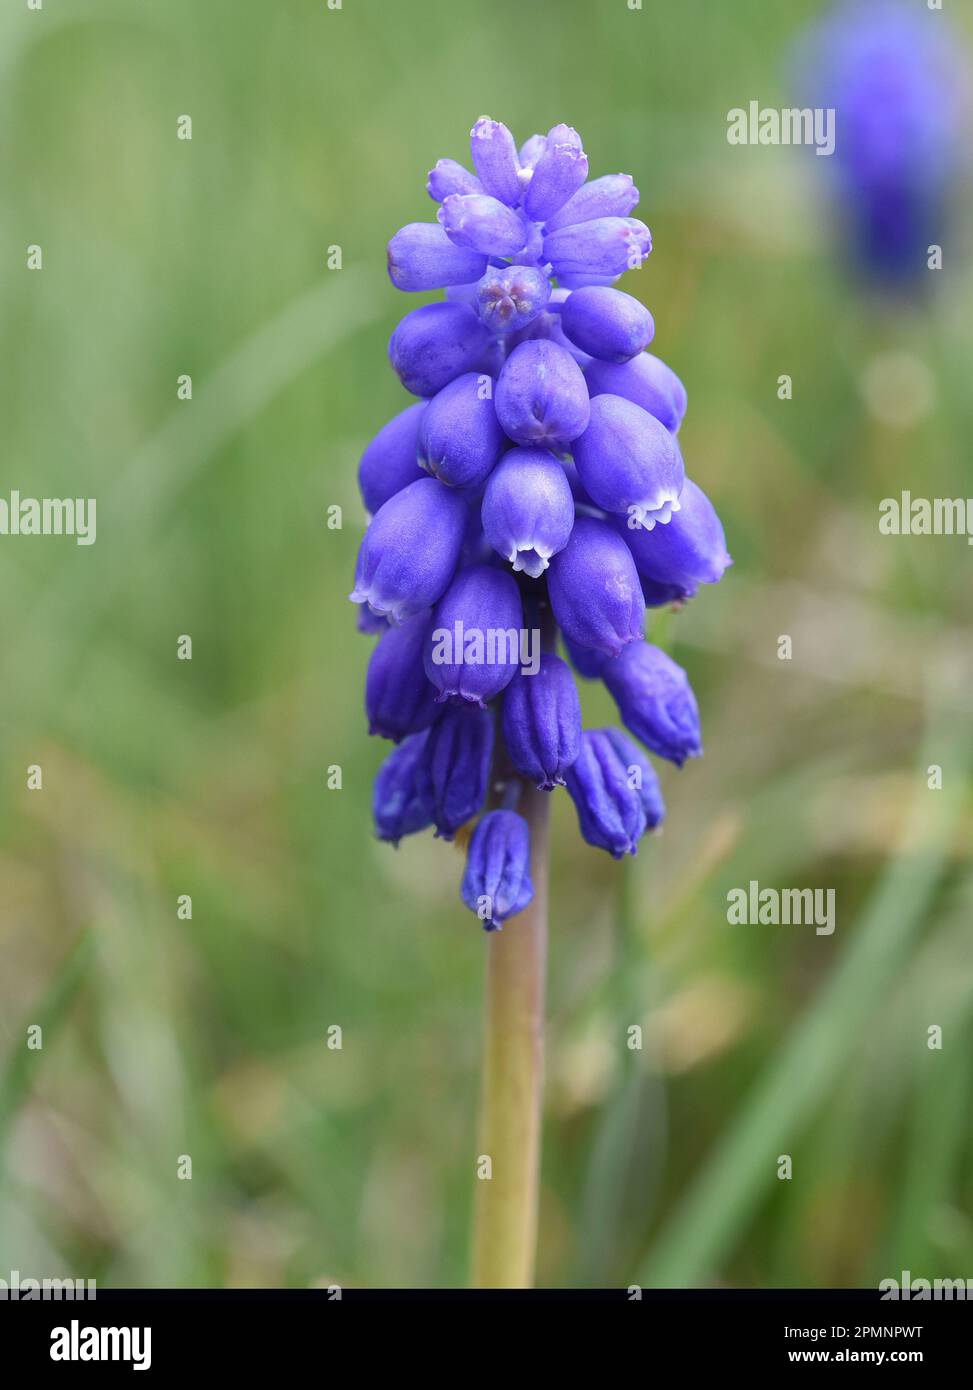 Traubenhyazinthe, Muscari latifolium, ist eine wachsende sauvage Blume mit blauen Bluten. La jacinthe de raisin, Muscari latifolium, est une fleur sauvage au bleu Banque D'Images